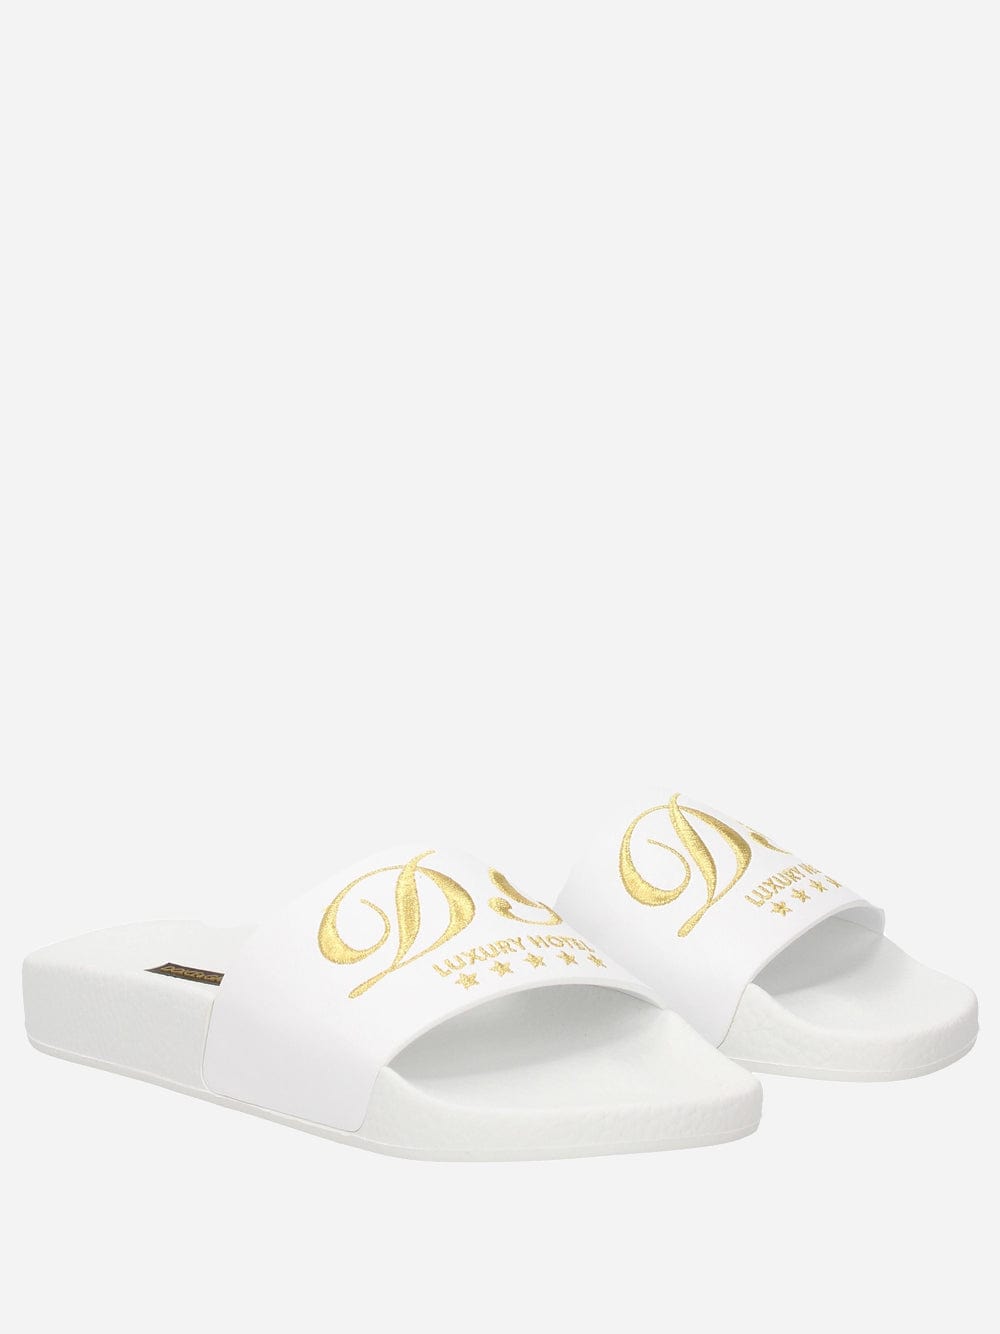 Dolce & Gabbana DG Luxury Hotel Slides